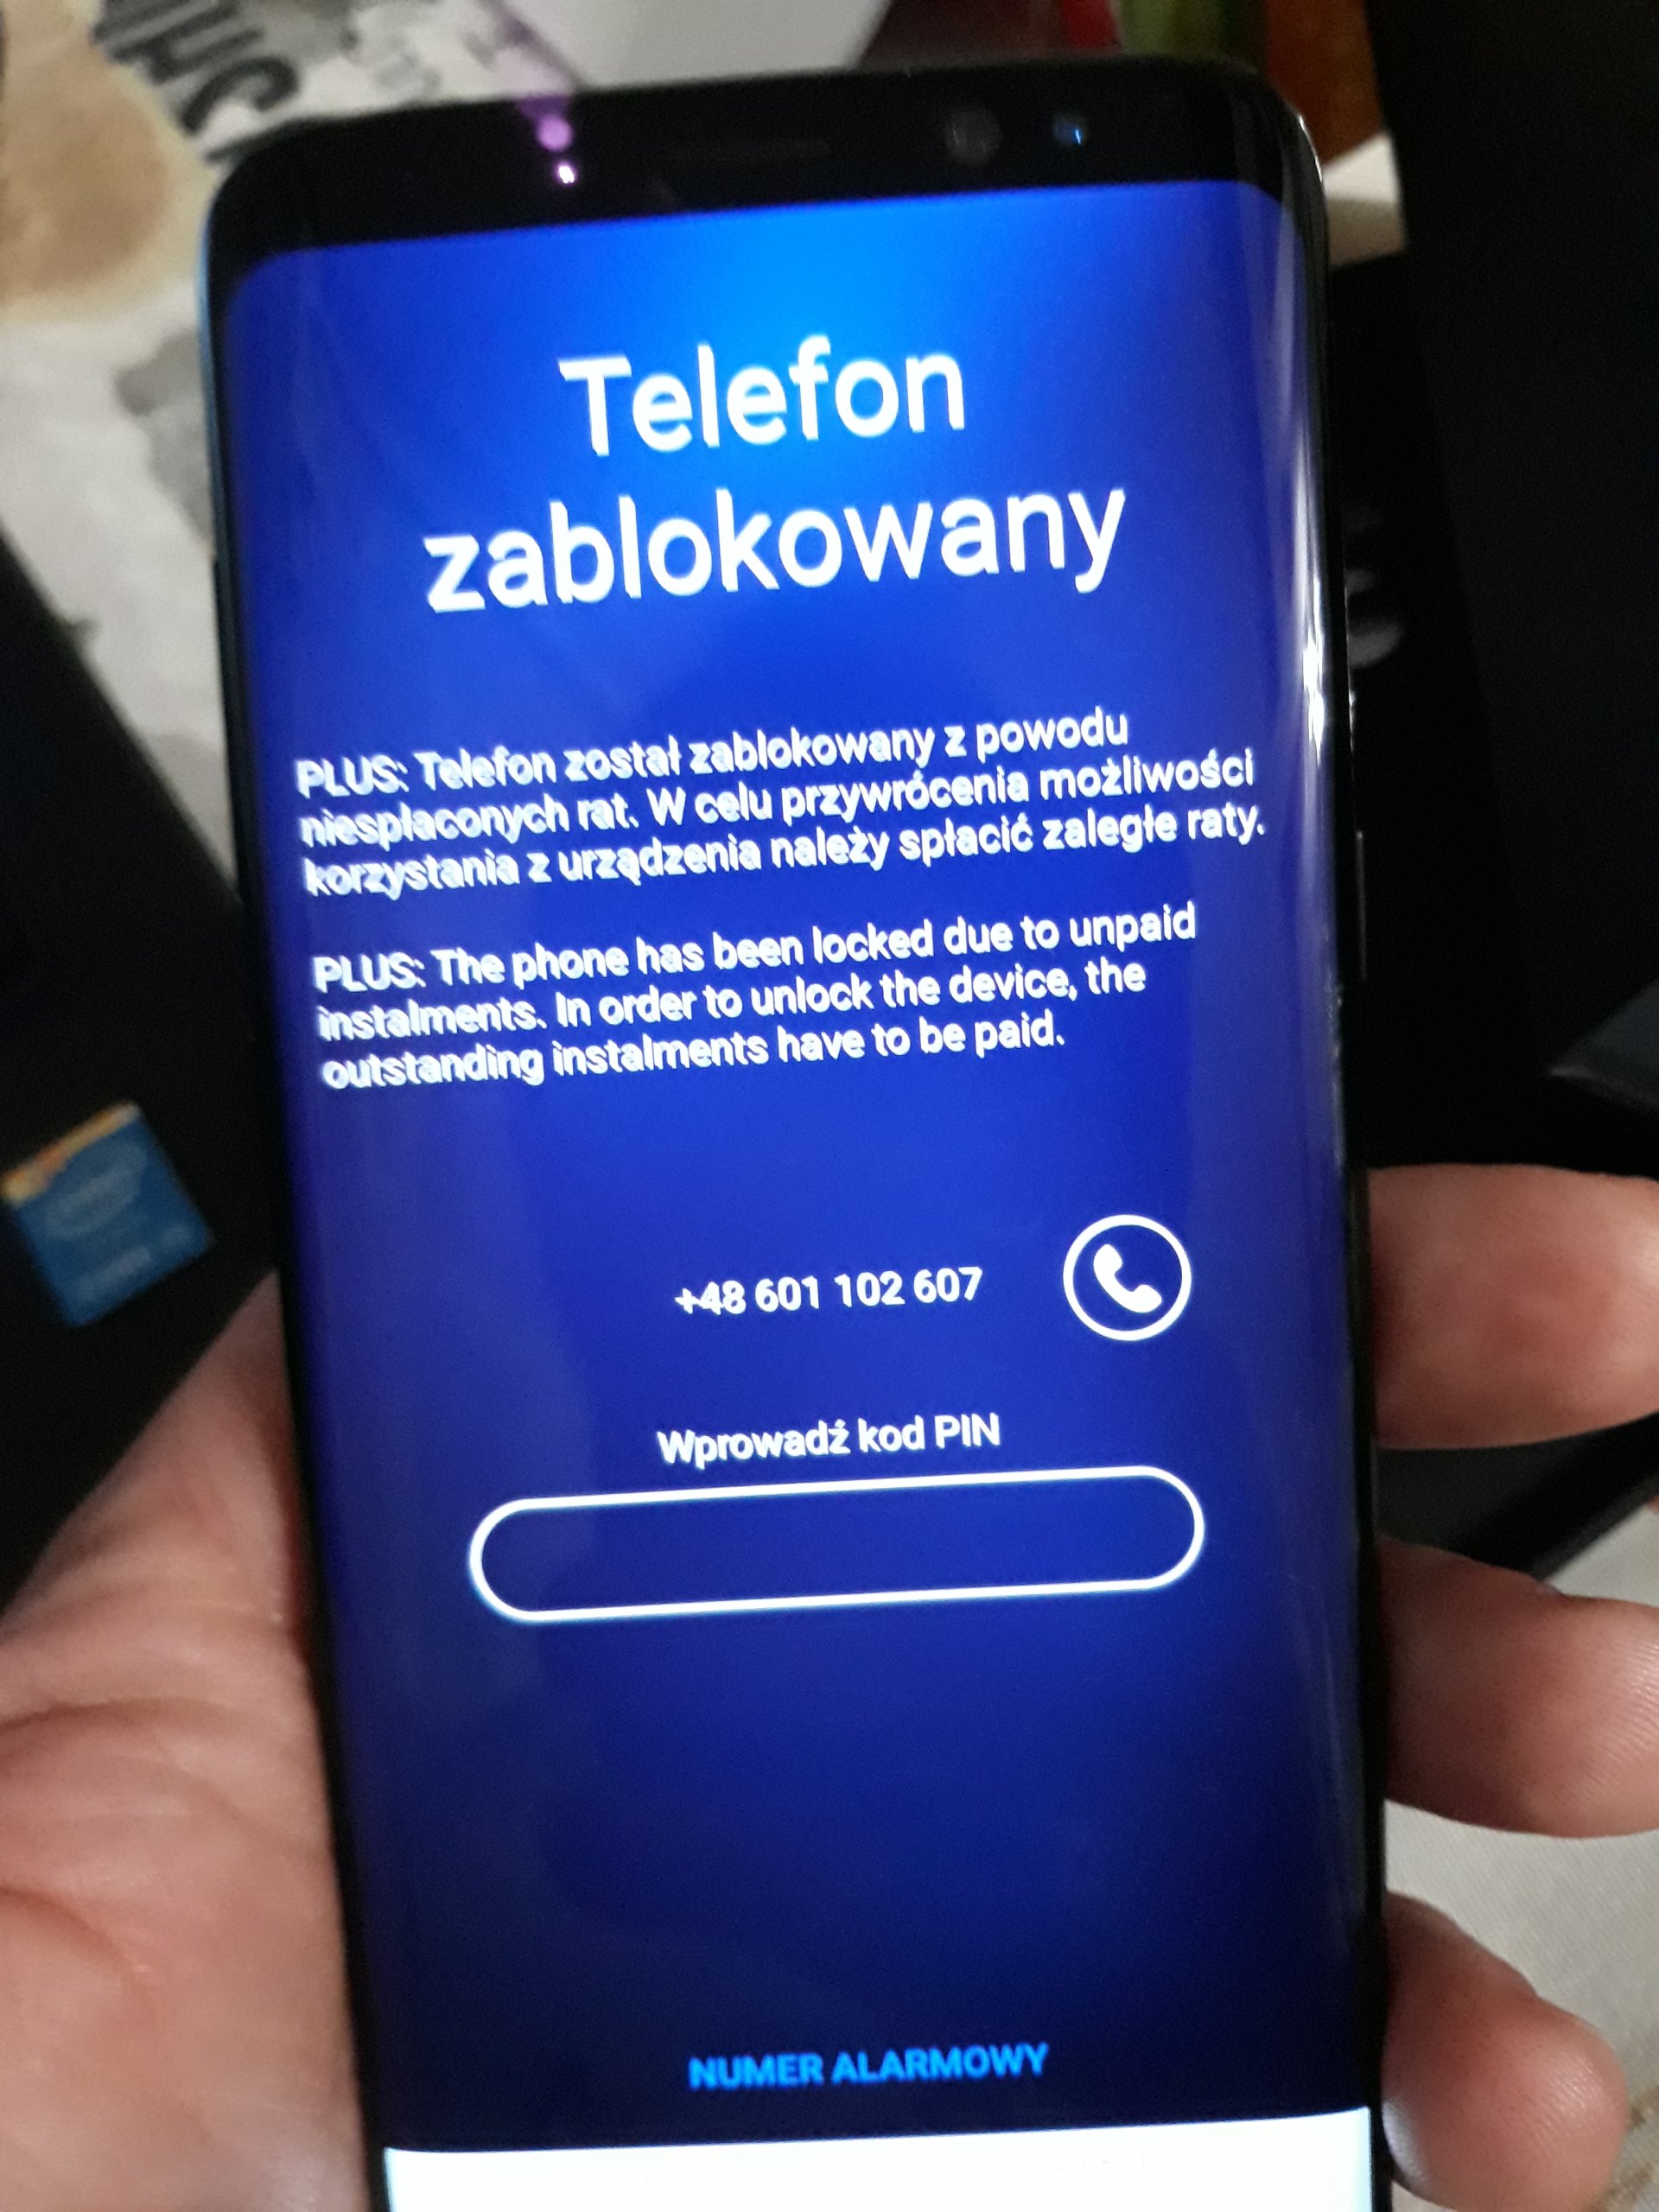 Samsung Galaxy S8 31 08 17 Zablokowany 7024854589 Oficjalne Archiwum Allegro